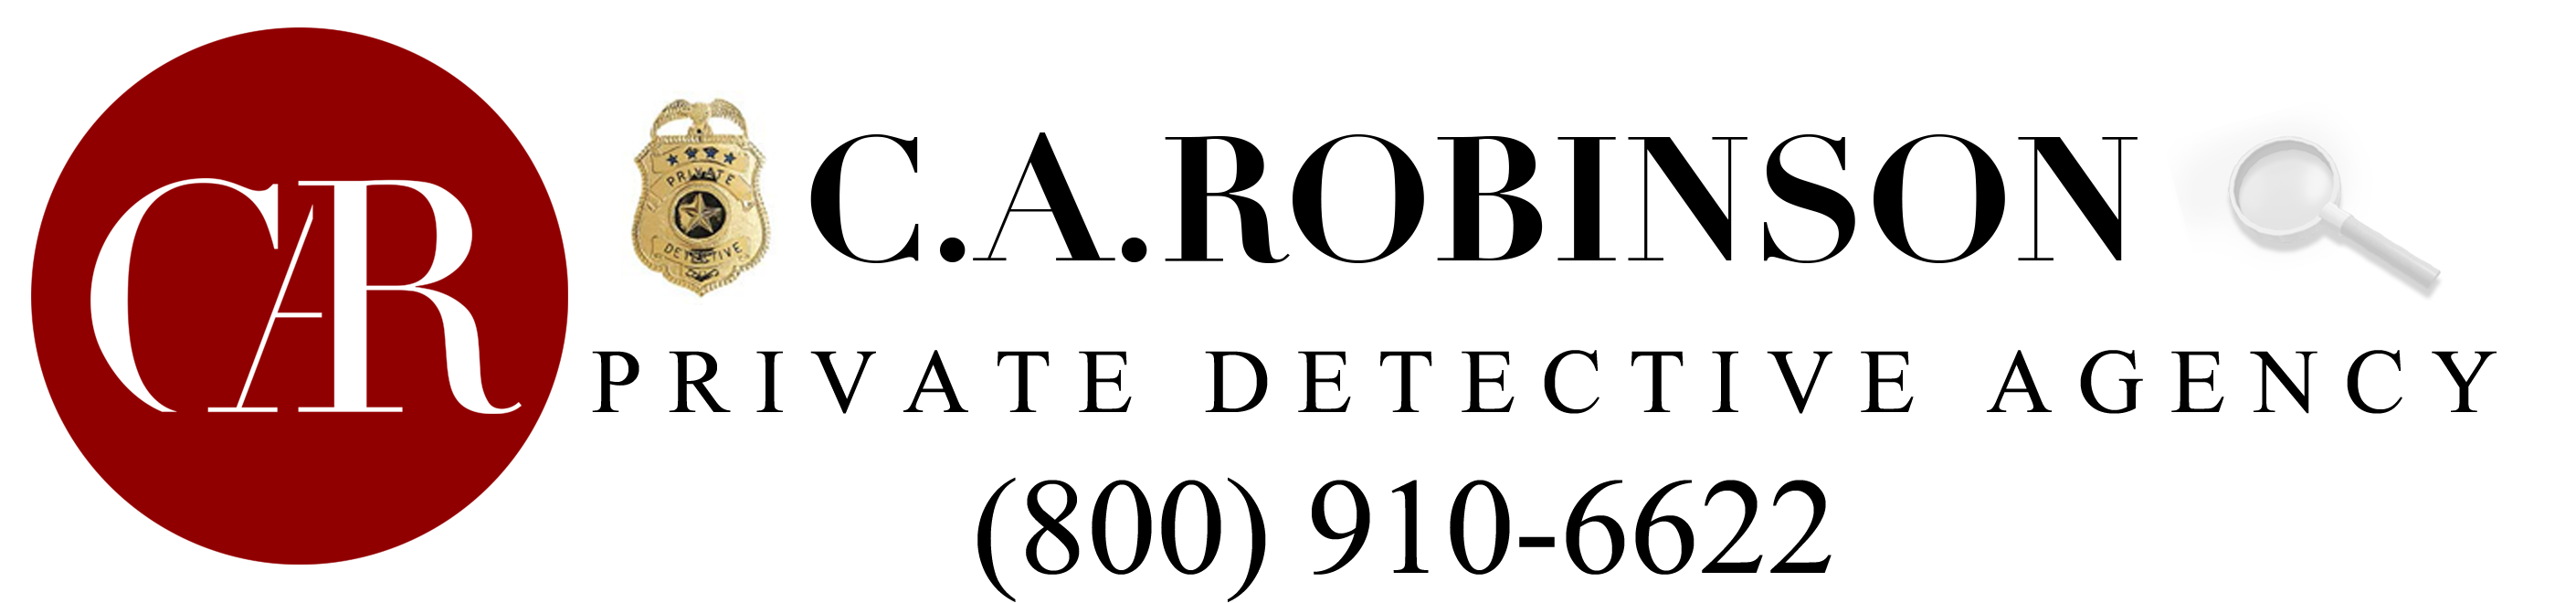 Private Investigator | C.A.Robinson Private Detective Agency